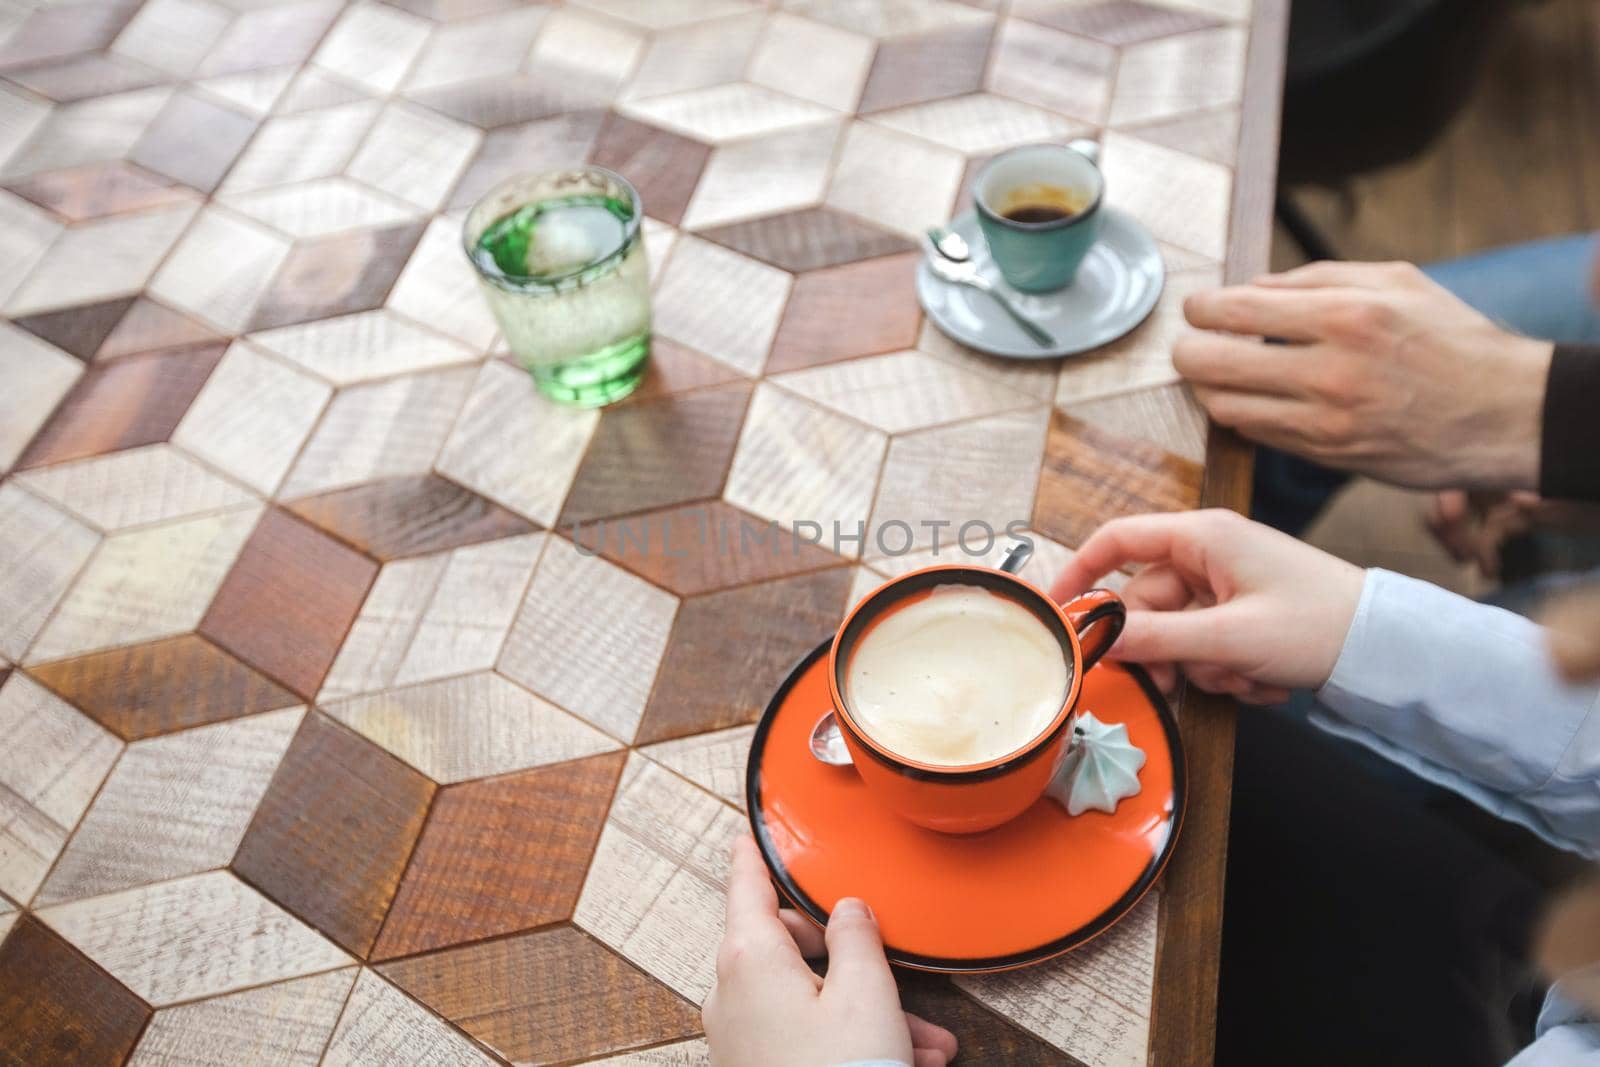 Crop people having coffee at table by Demkat